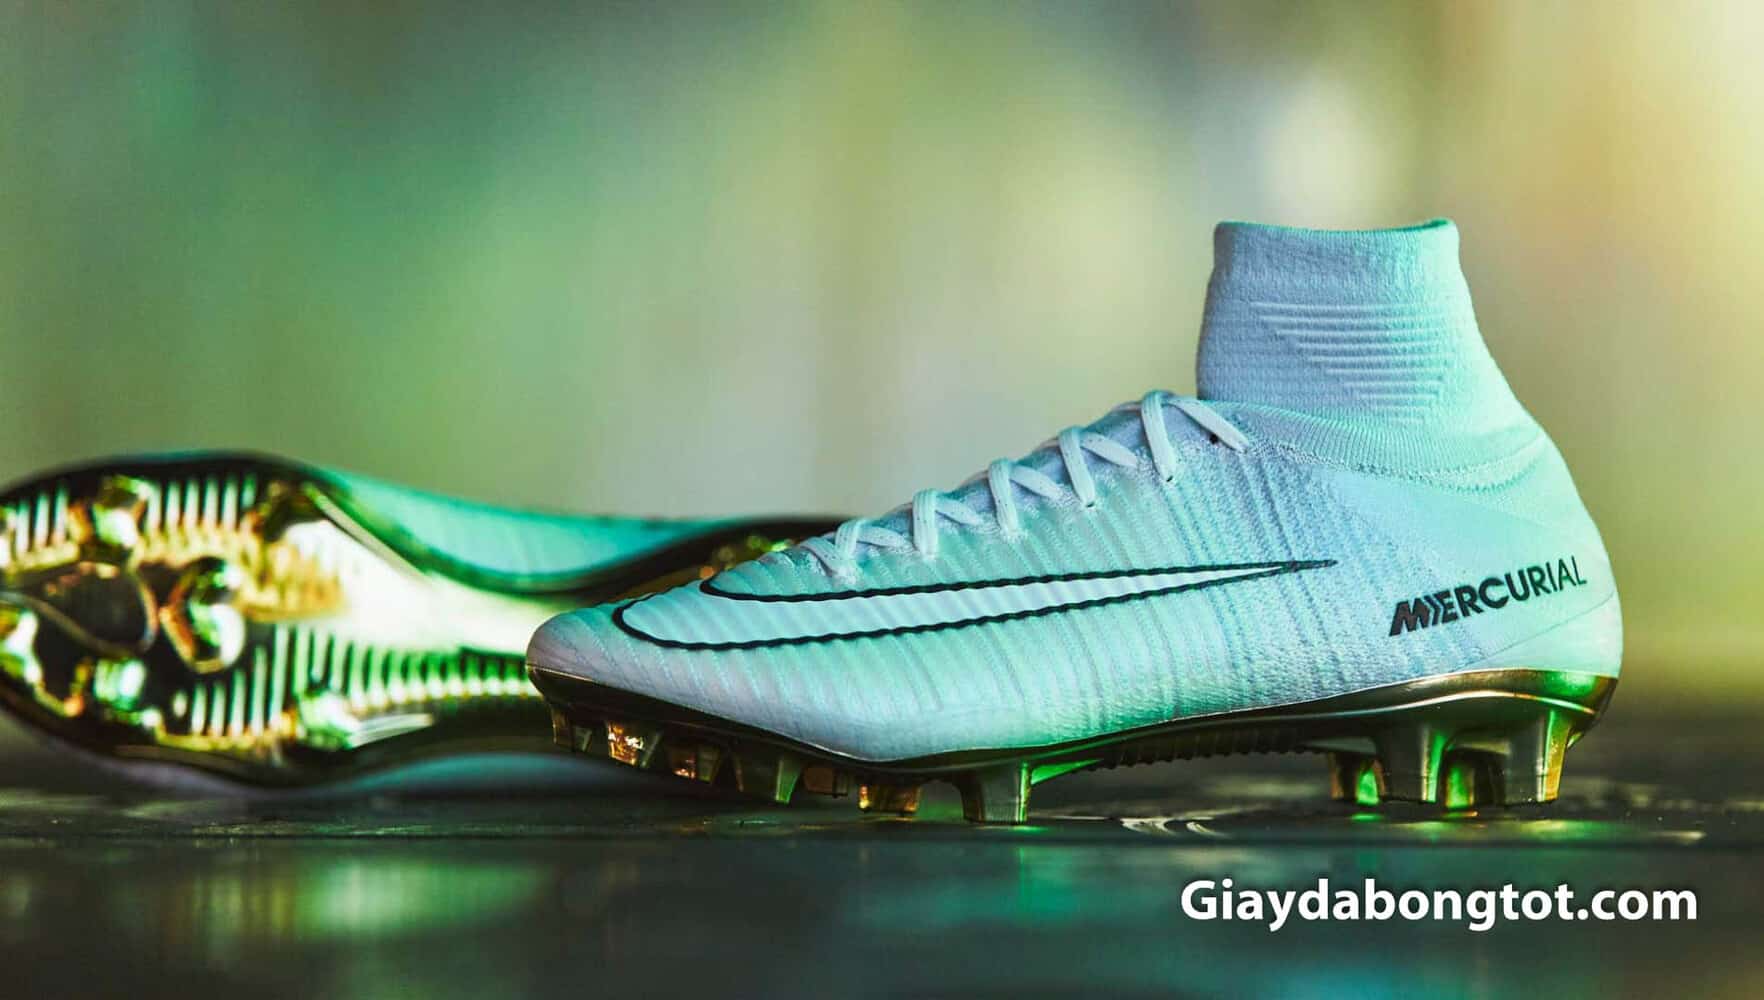 Giày cổ cao đá bóng Nike Mercurial Superfly CR7 Vitórias được ra mắt để kỷ niệm danh hiệu quả bóng vàng thứ 4 của Ronaldo CR7